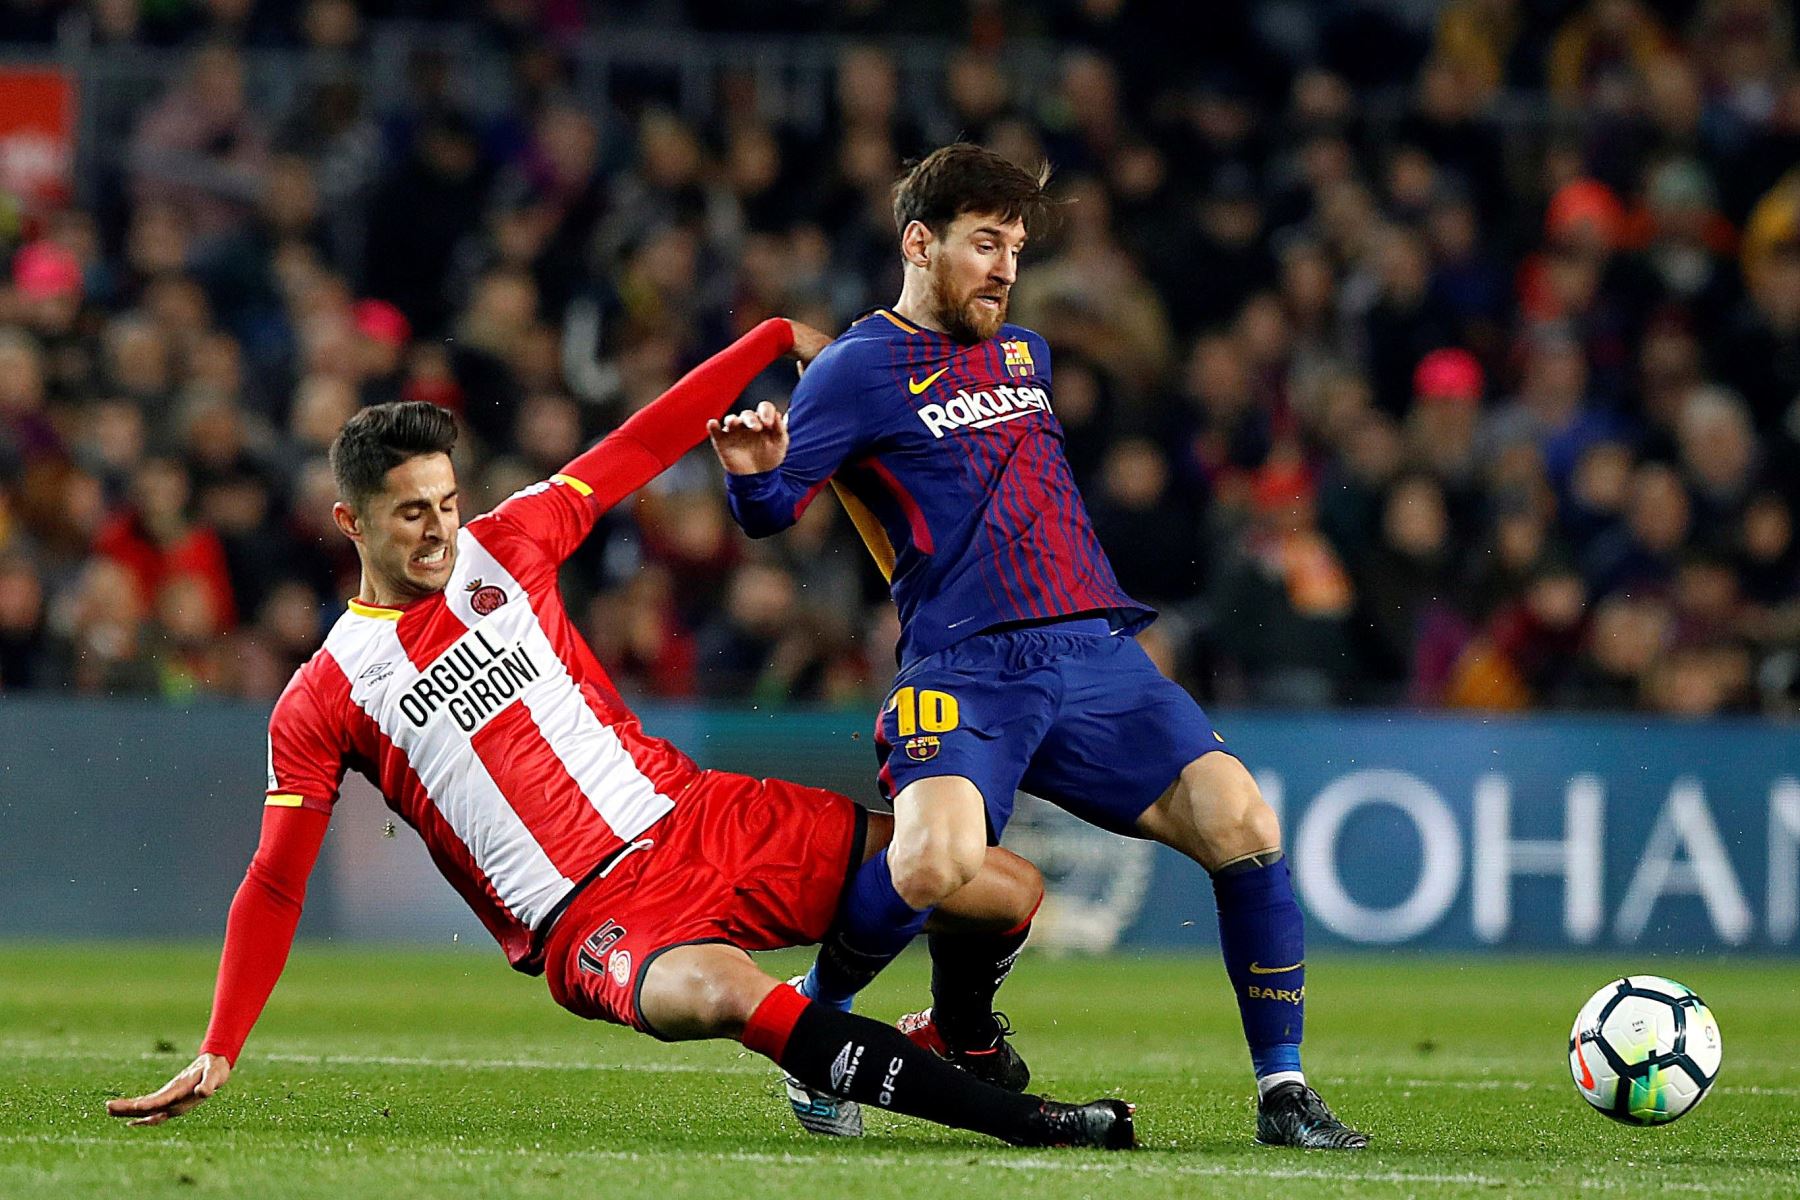 Leo Messi entrando en falta por Juanpe, del Girona, durante el partido de Liga en Primera Divisón que se disputa esta noche en el Camp Nou, en Barcelona. Foto:EFE